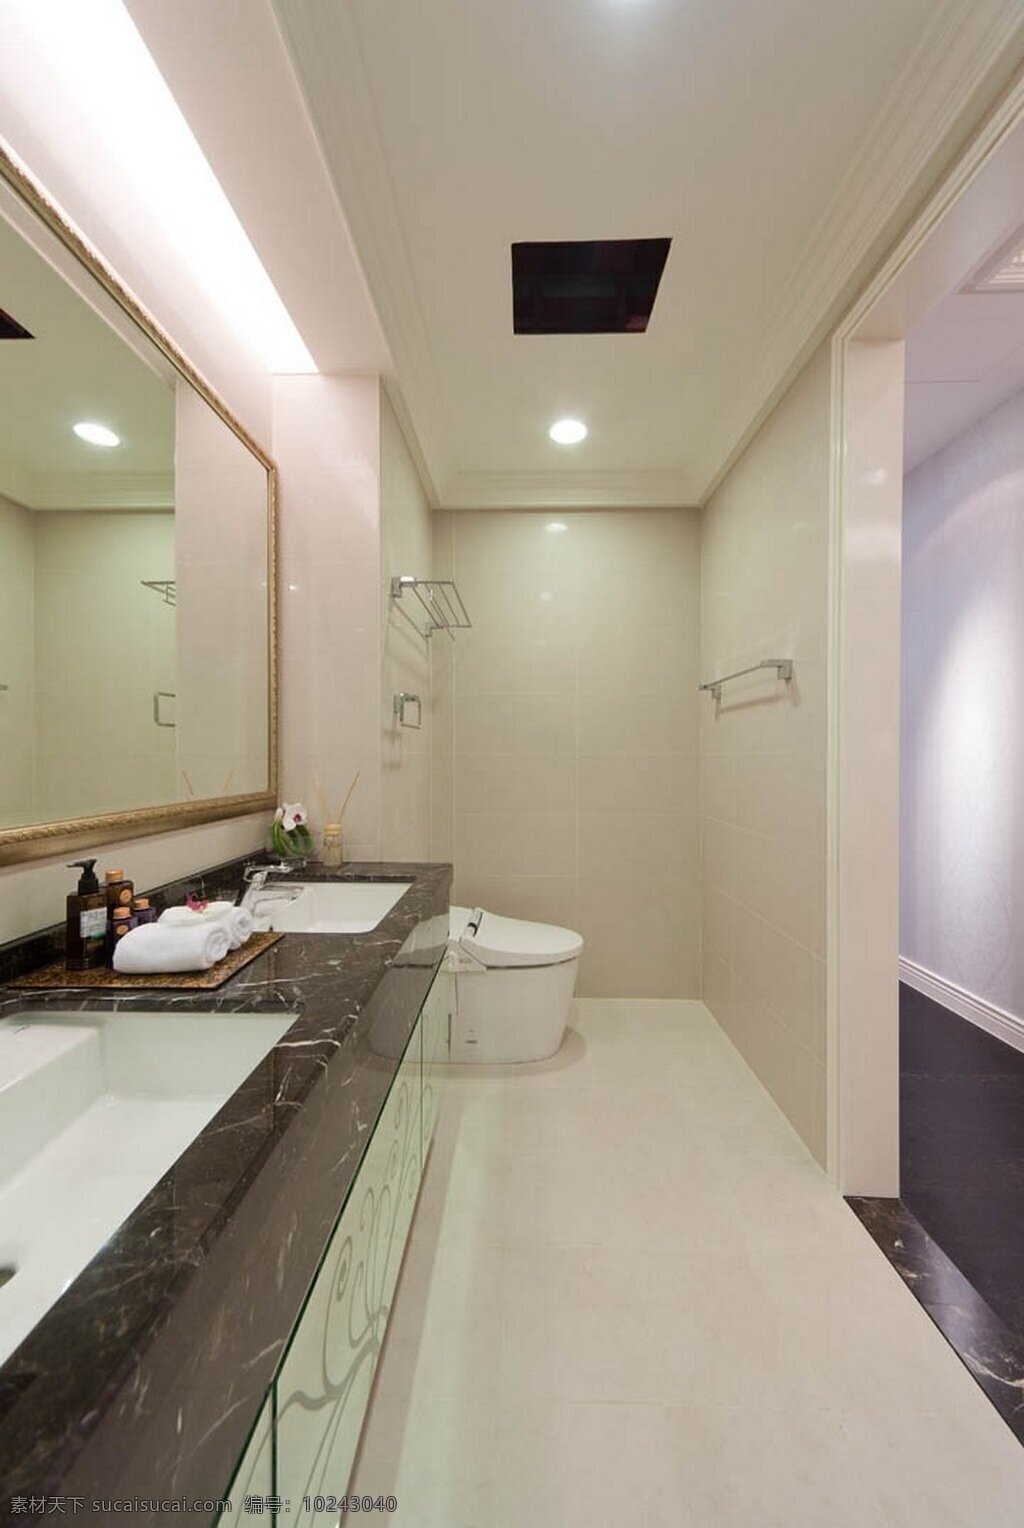 现代 简约 浴室 浅褐色 边框 镜子 室内装修 效果图 浅色地板 瓷砖背景墙 白色地板 深色洗手台